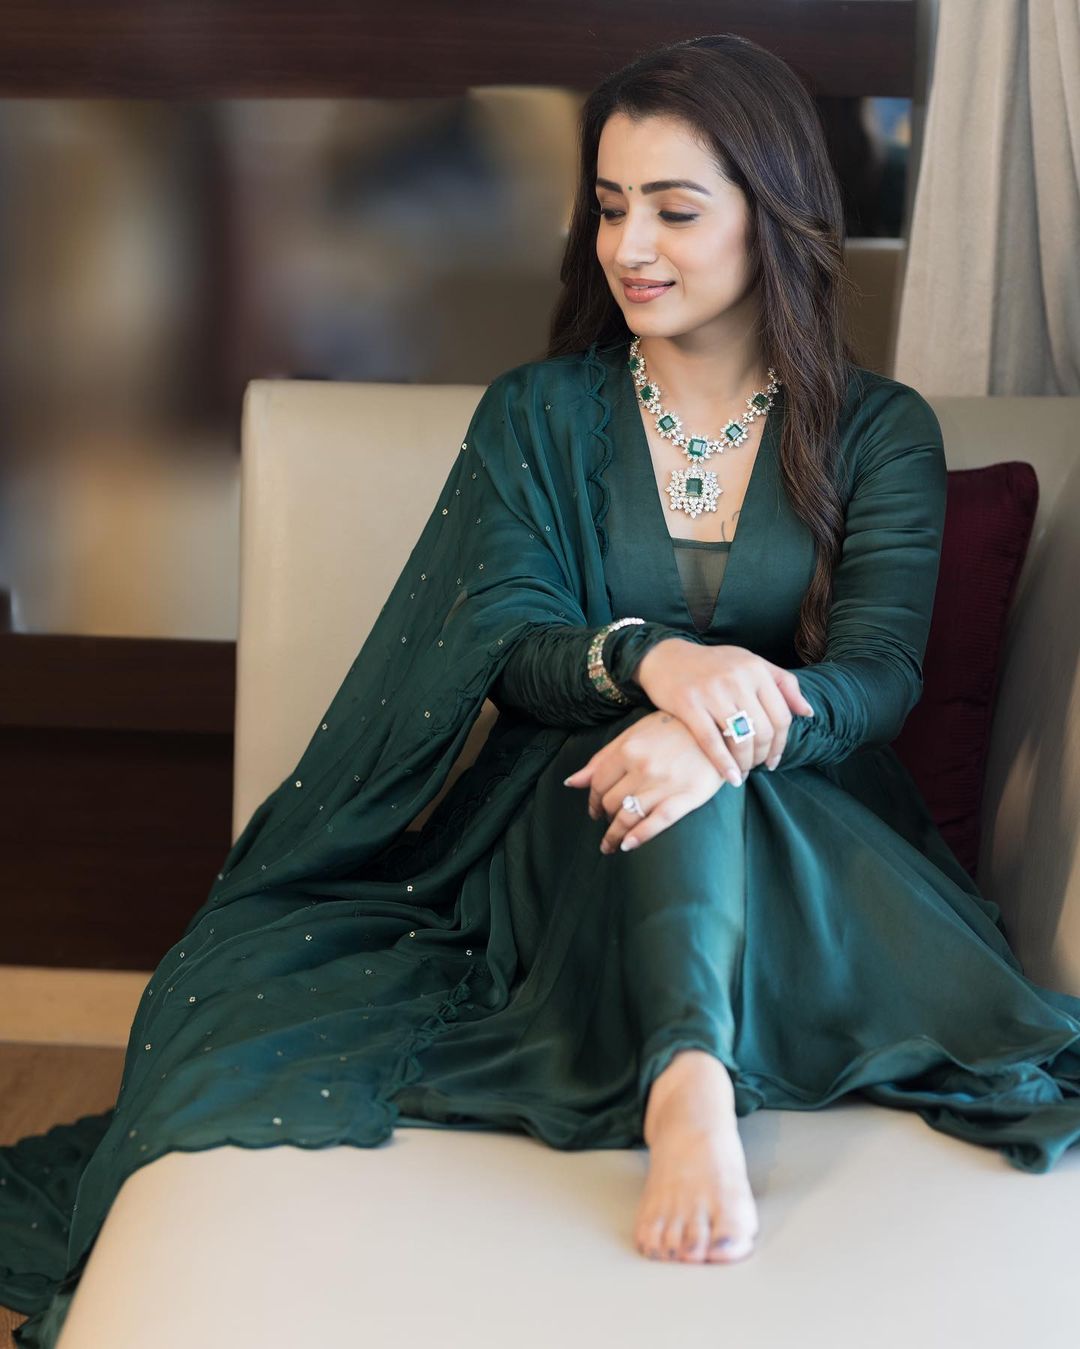 Thrisha Sex 3gp - Trisha Krishnan Exudes Royalty In This Emerald Green Outfit; See Pics -  News18